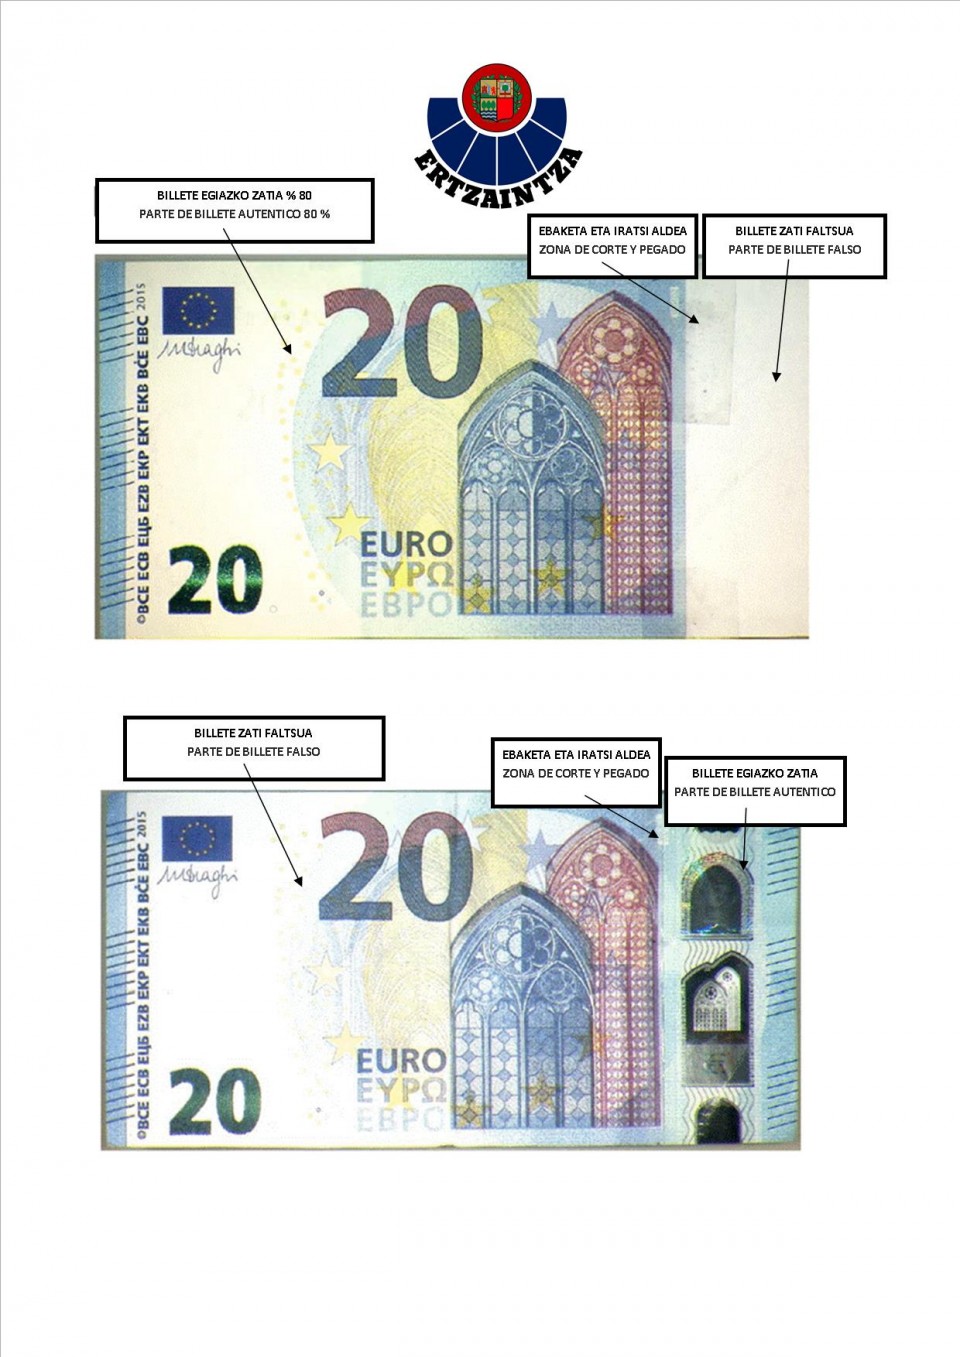 20 euroko billete faltsua. Ertzaintza